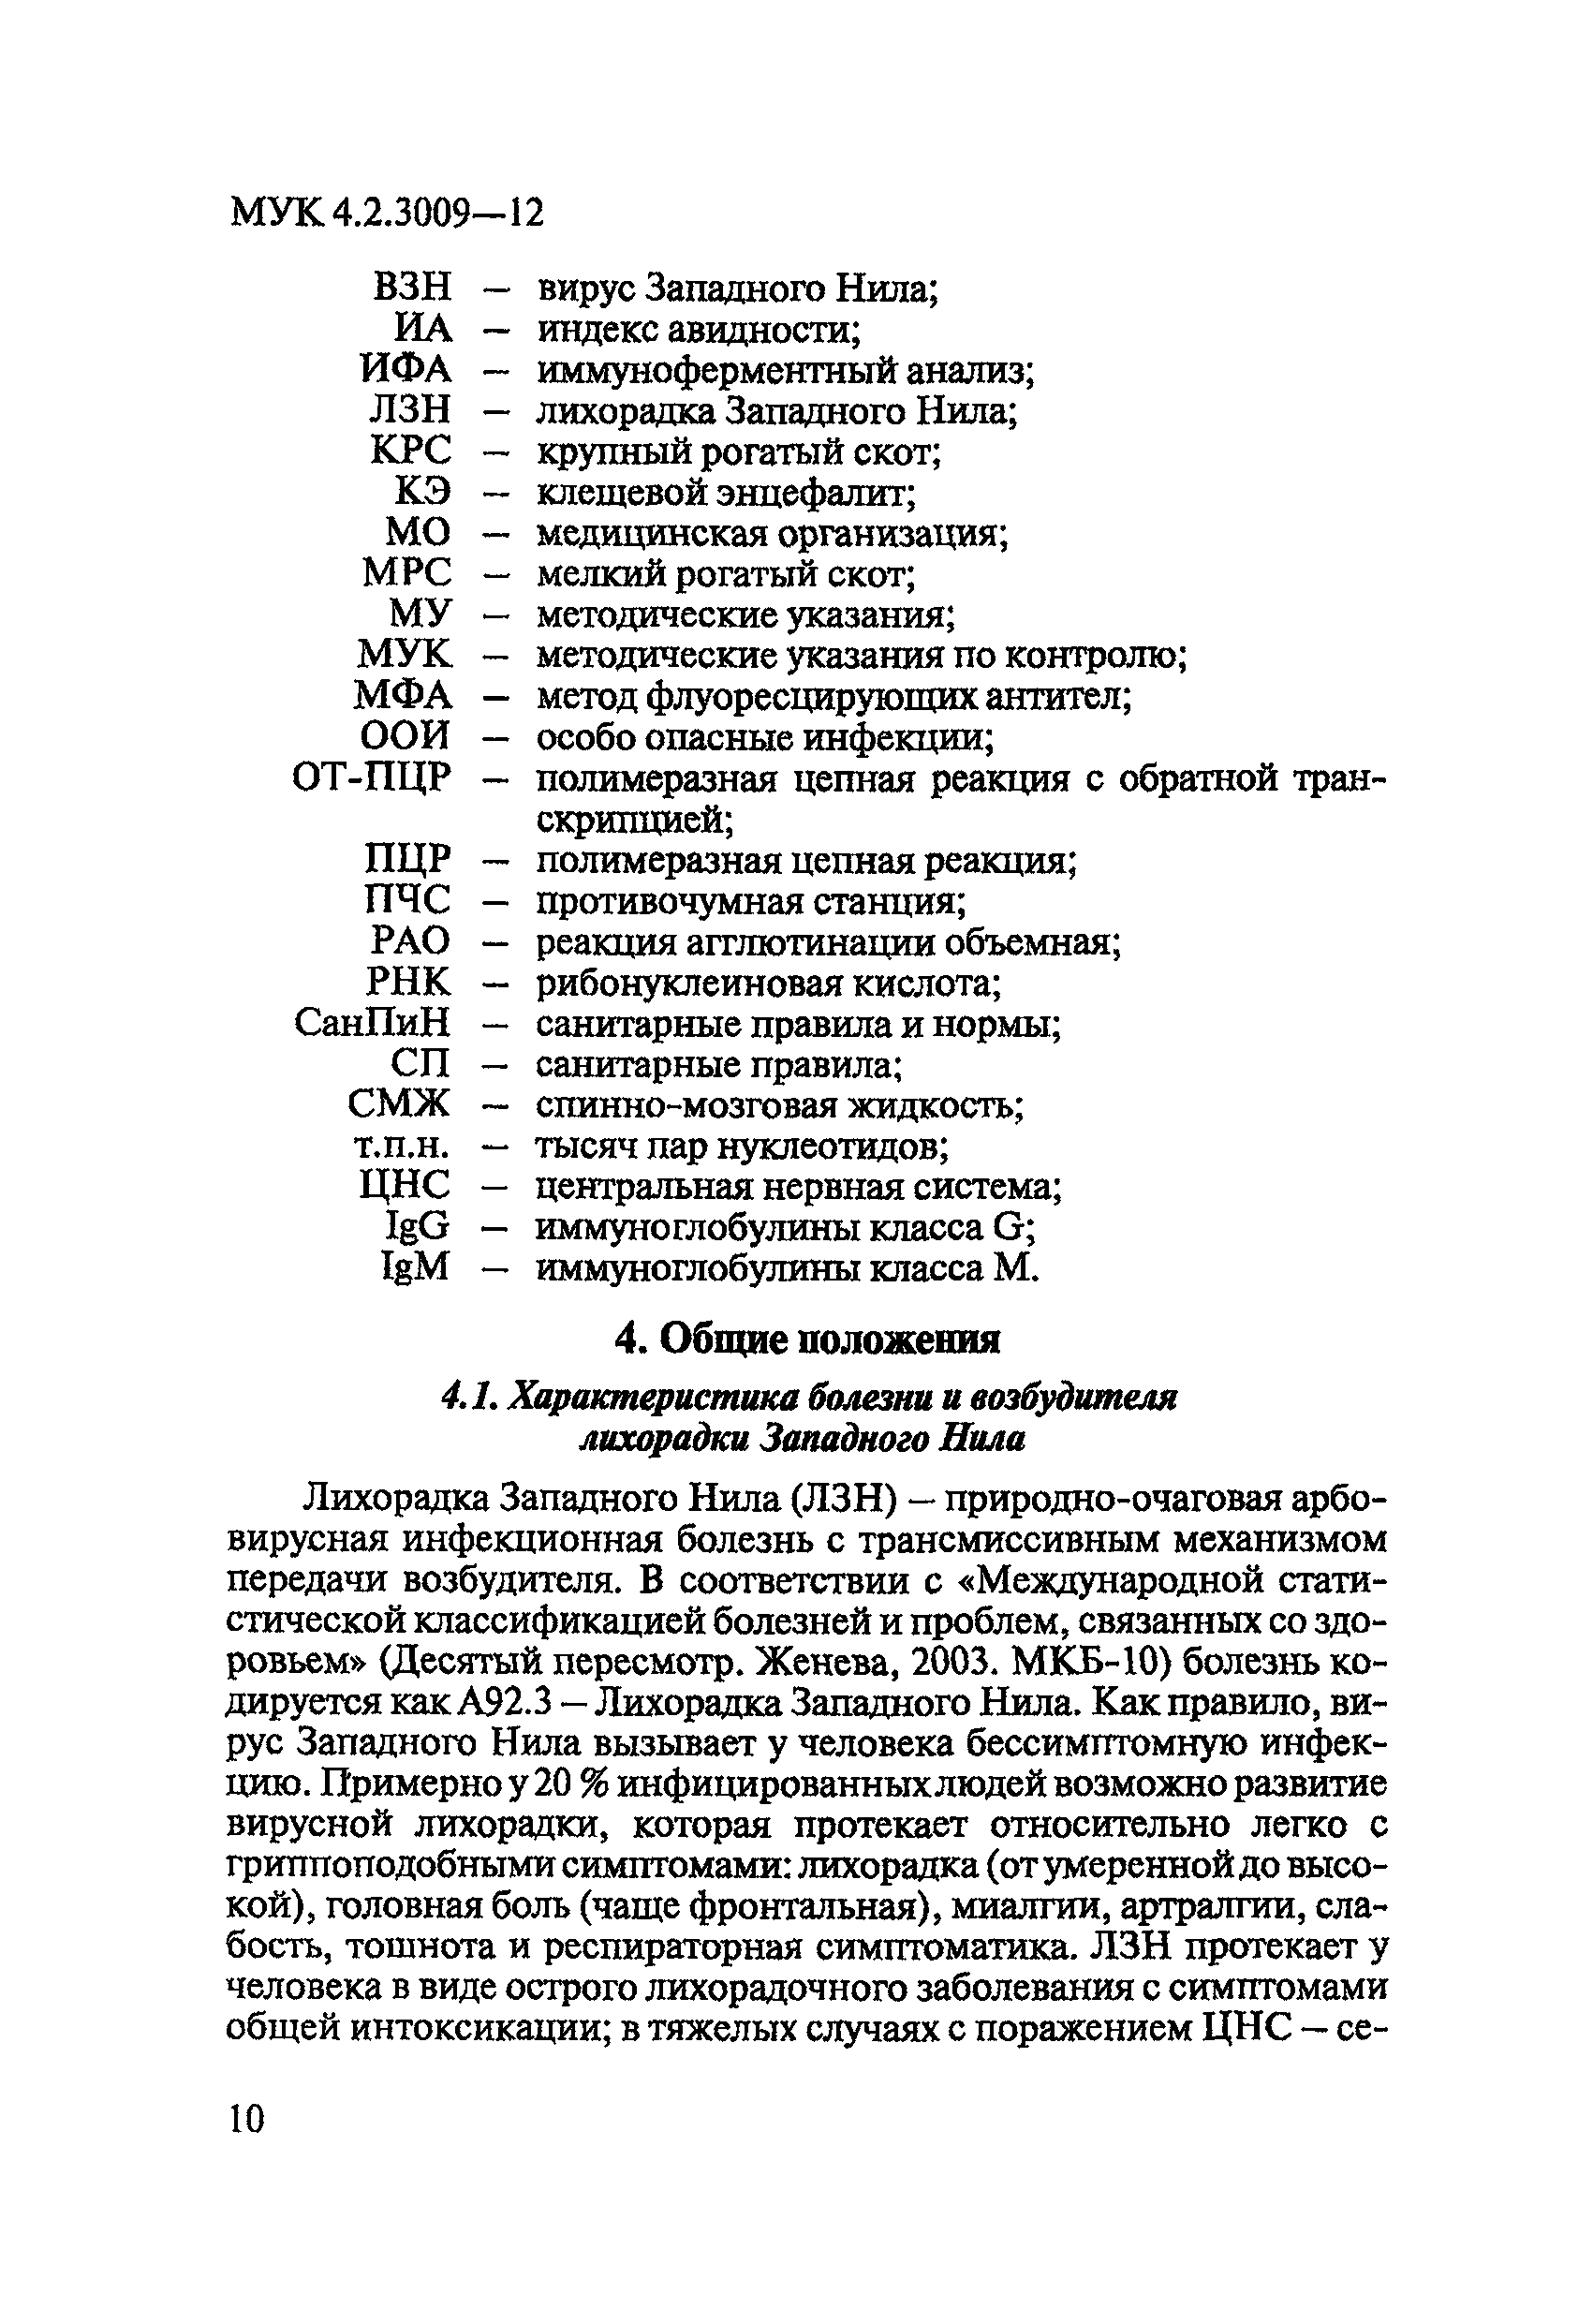 МУК 4.2.3009-12